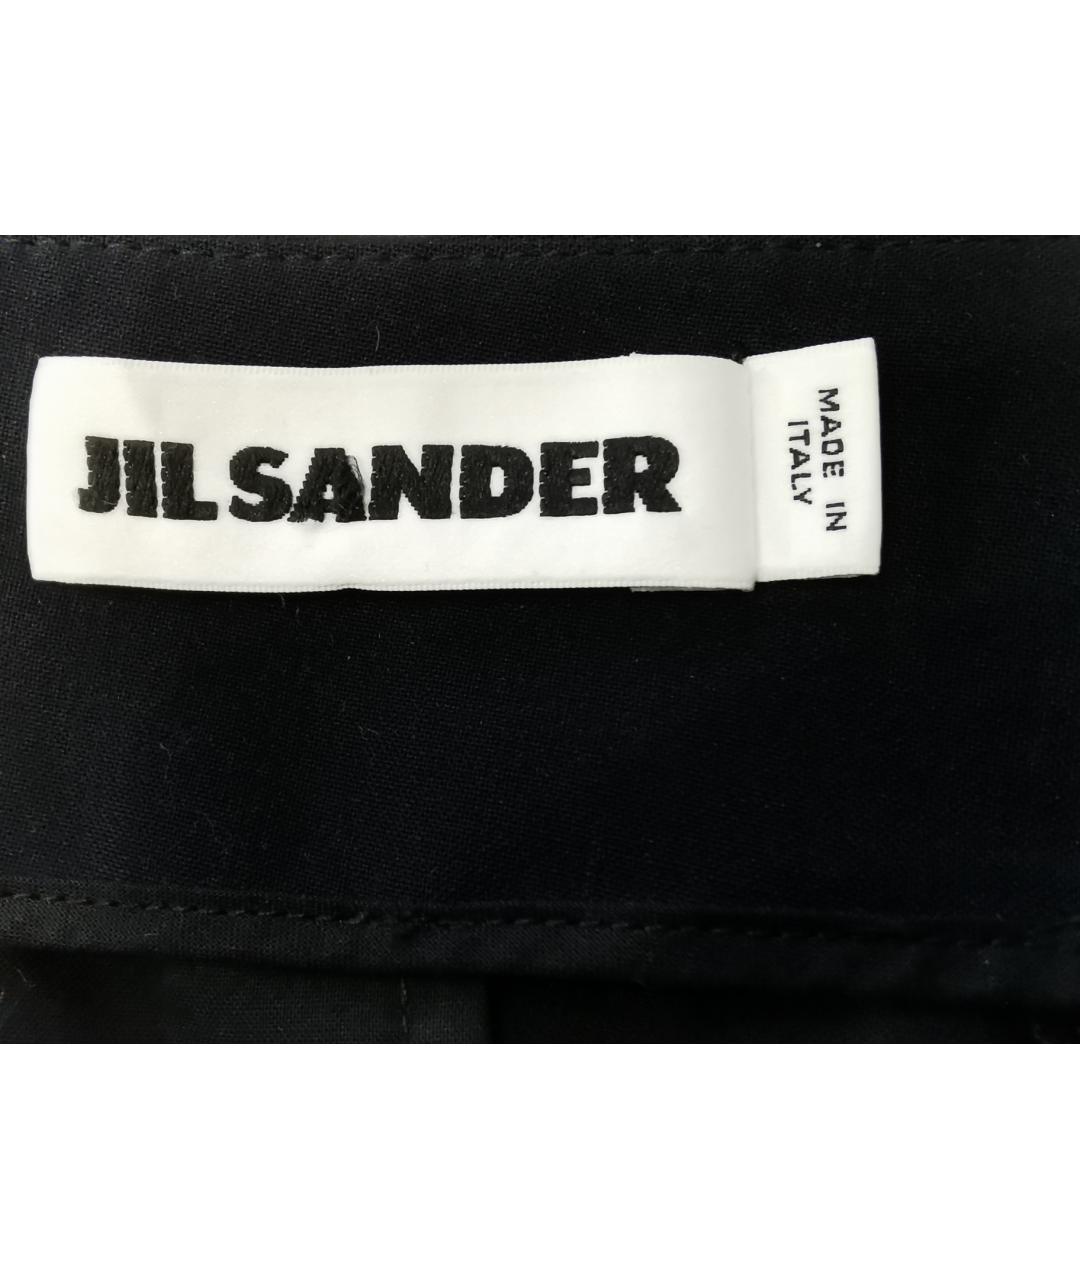 JIL SANDER Черные шерстяные брюки узкие, фото 3